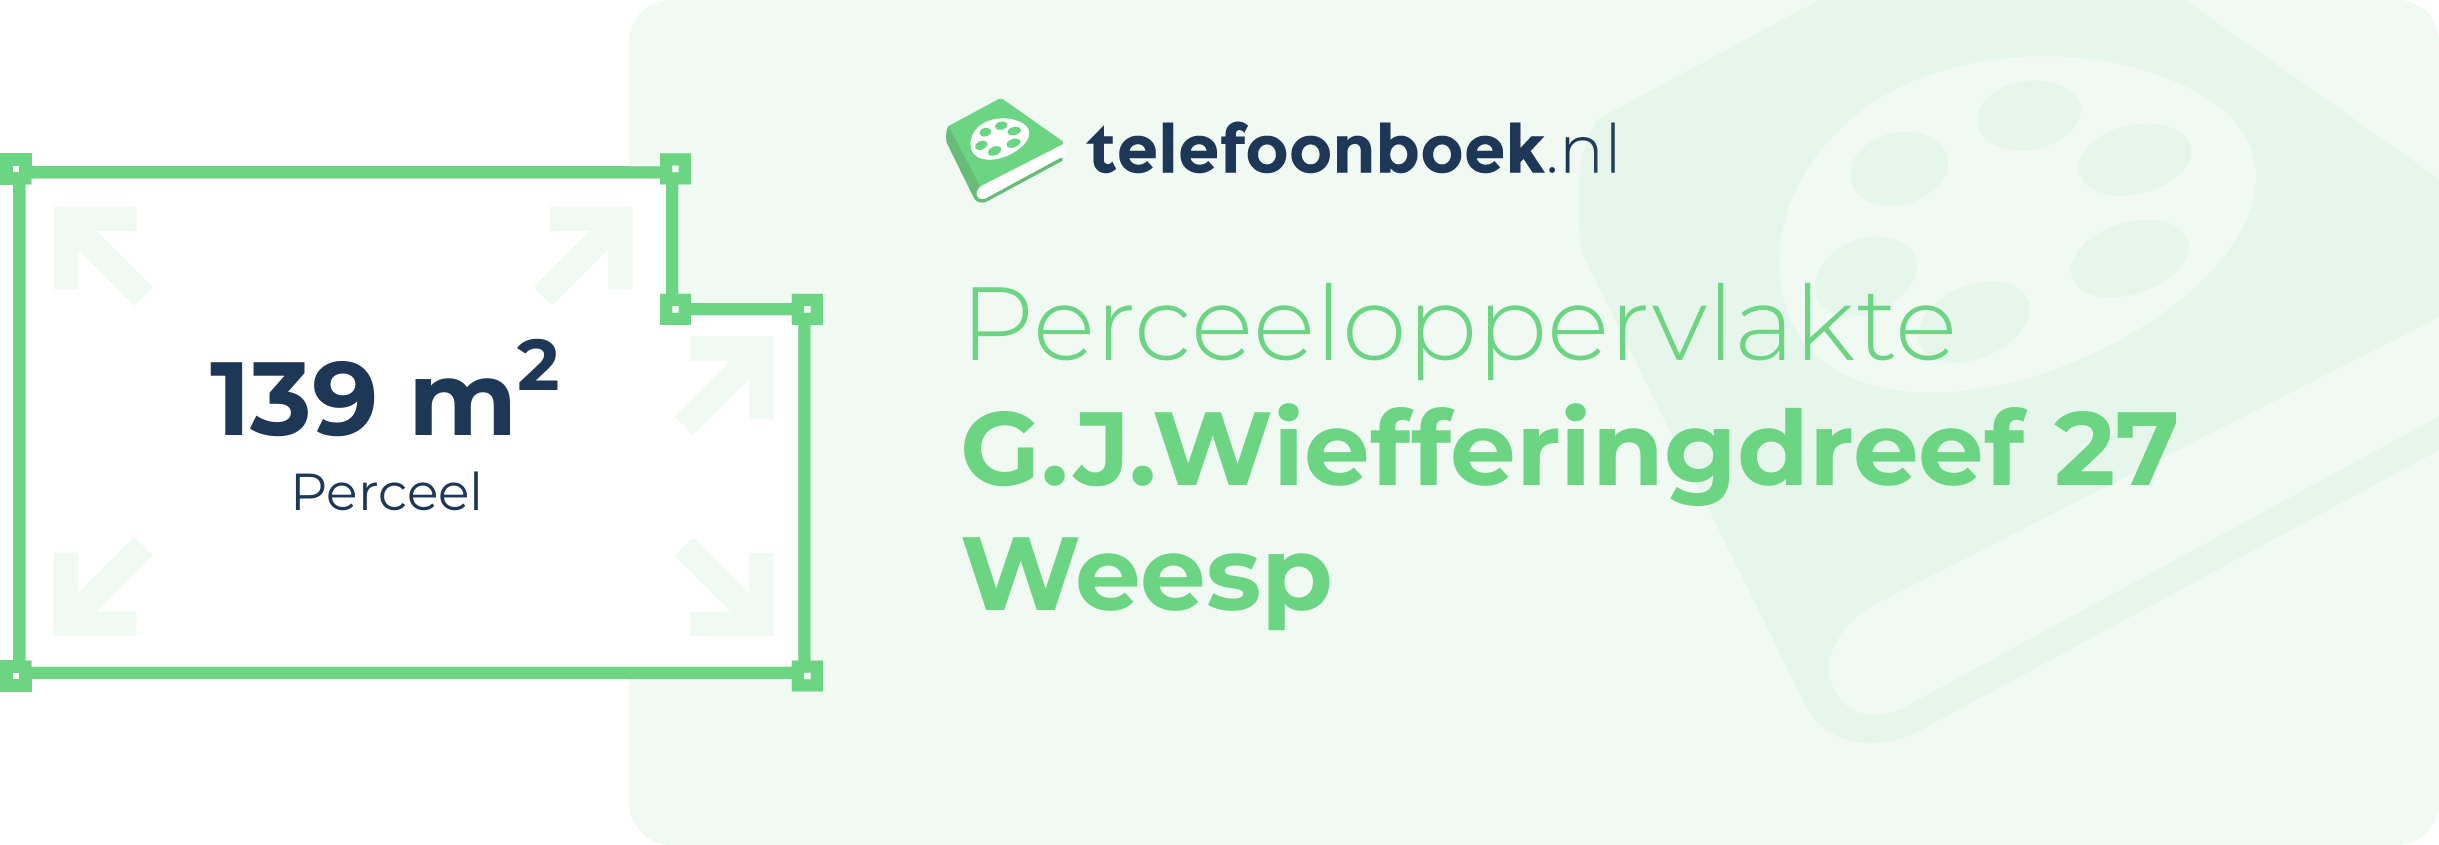 Perceeloppervlakte G.J.Wiefferingdreef 27 Weesp